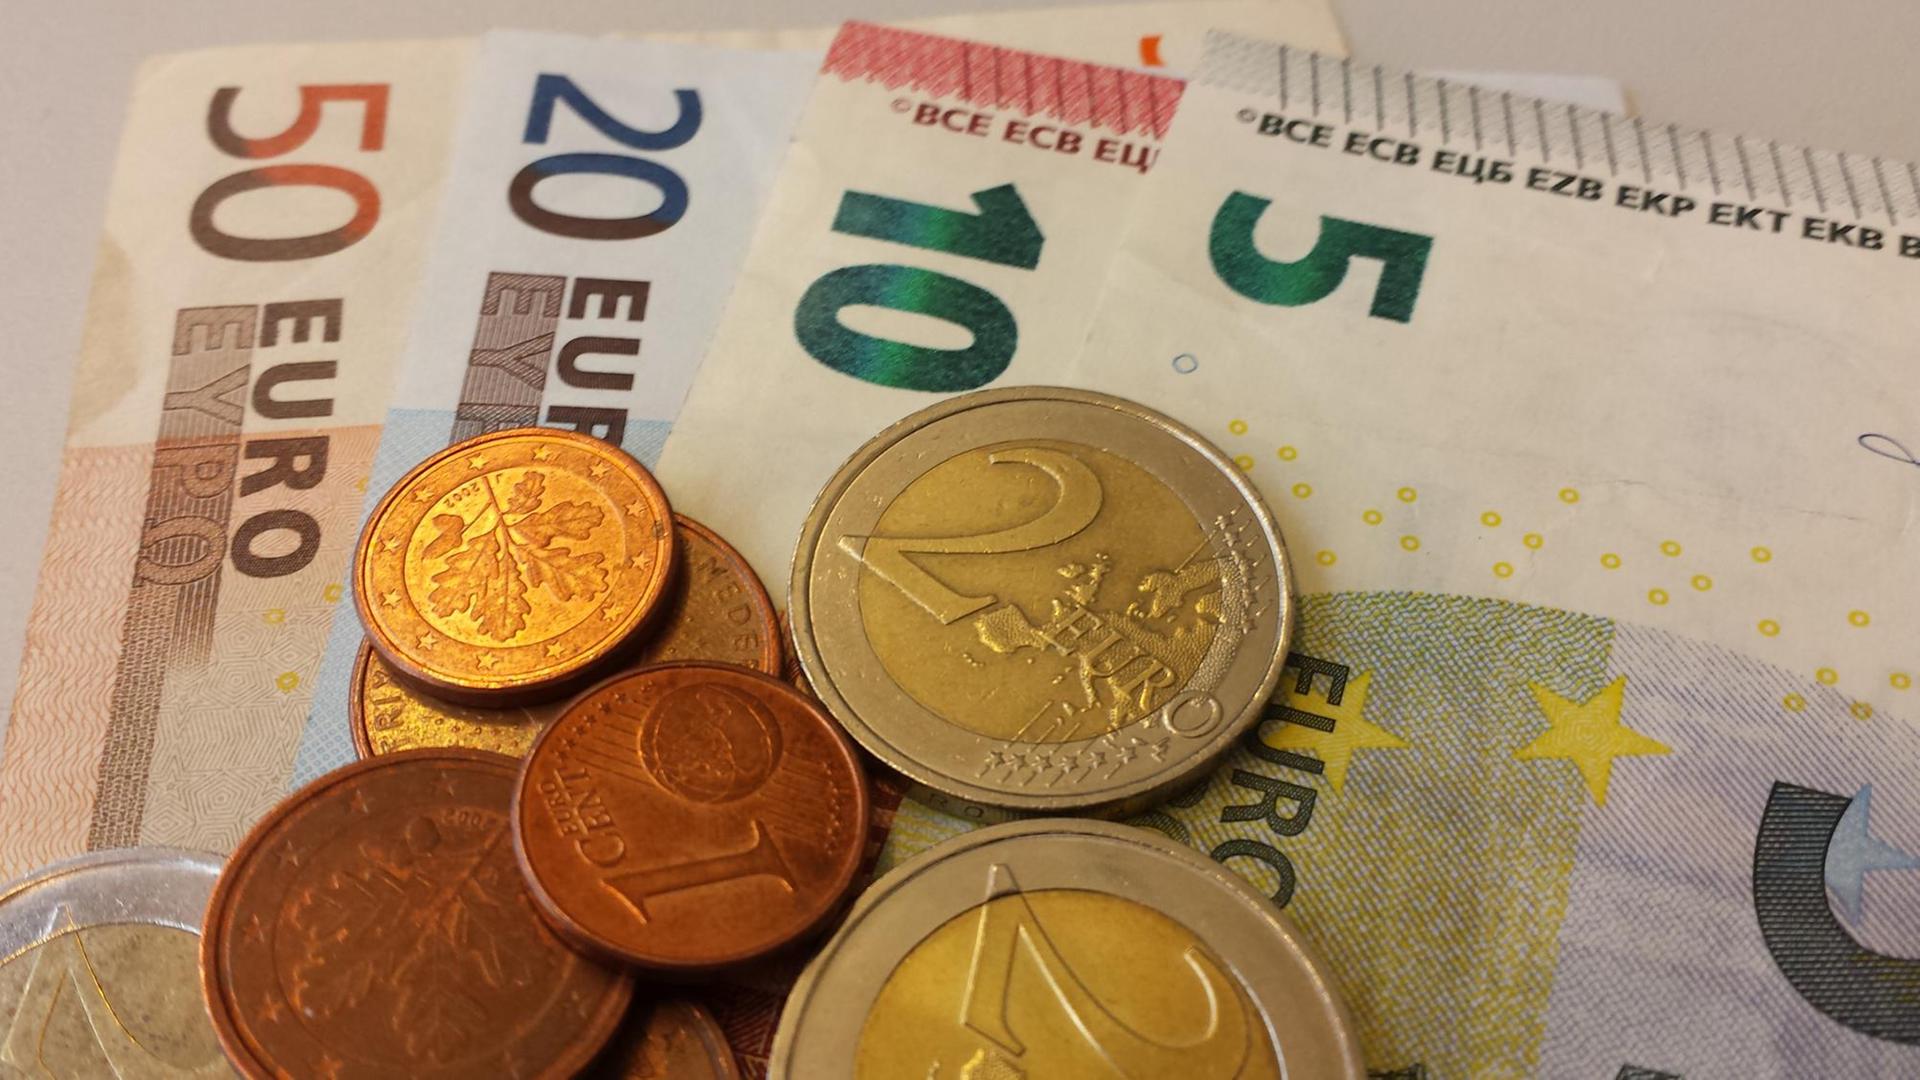 Euro-Geldscheine liegen mit Euro-Münzen auf einem Stapel.